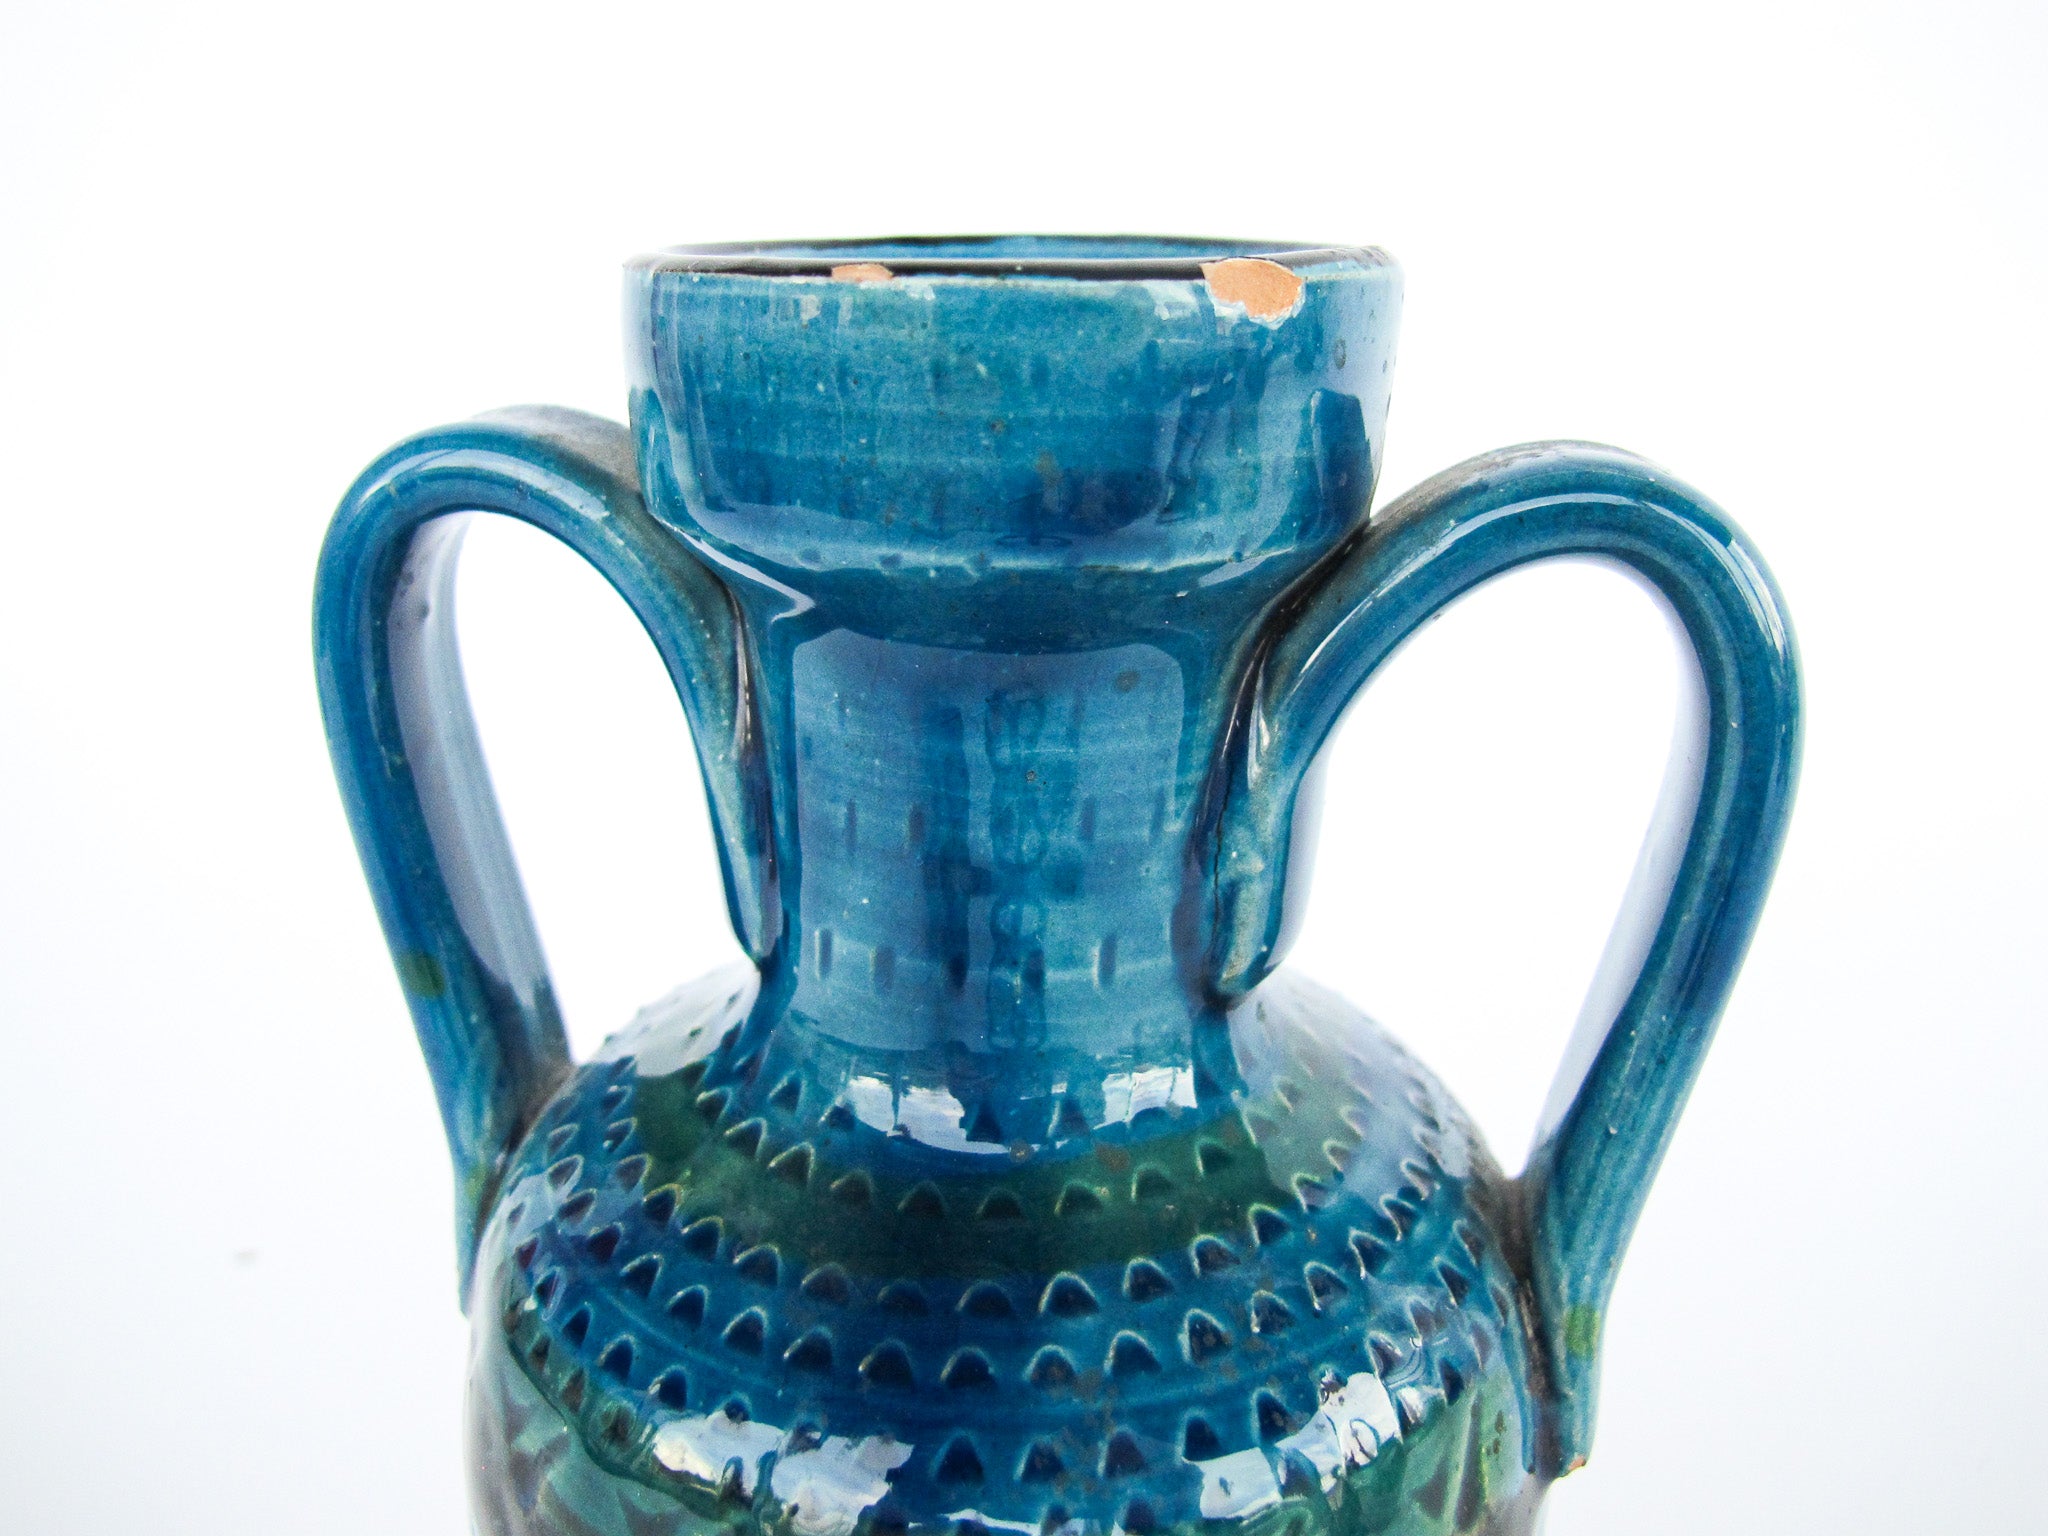 Rossini Italian Studio Pottery Ceramic Vase Volcano Glaze Blue Made in Italy